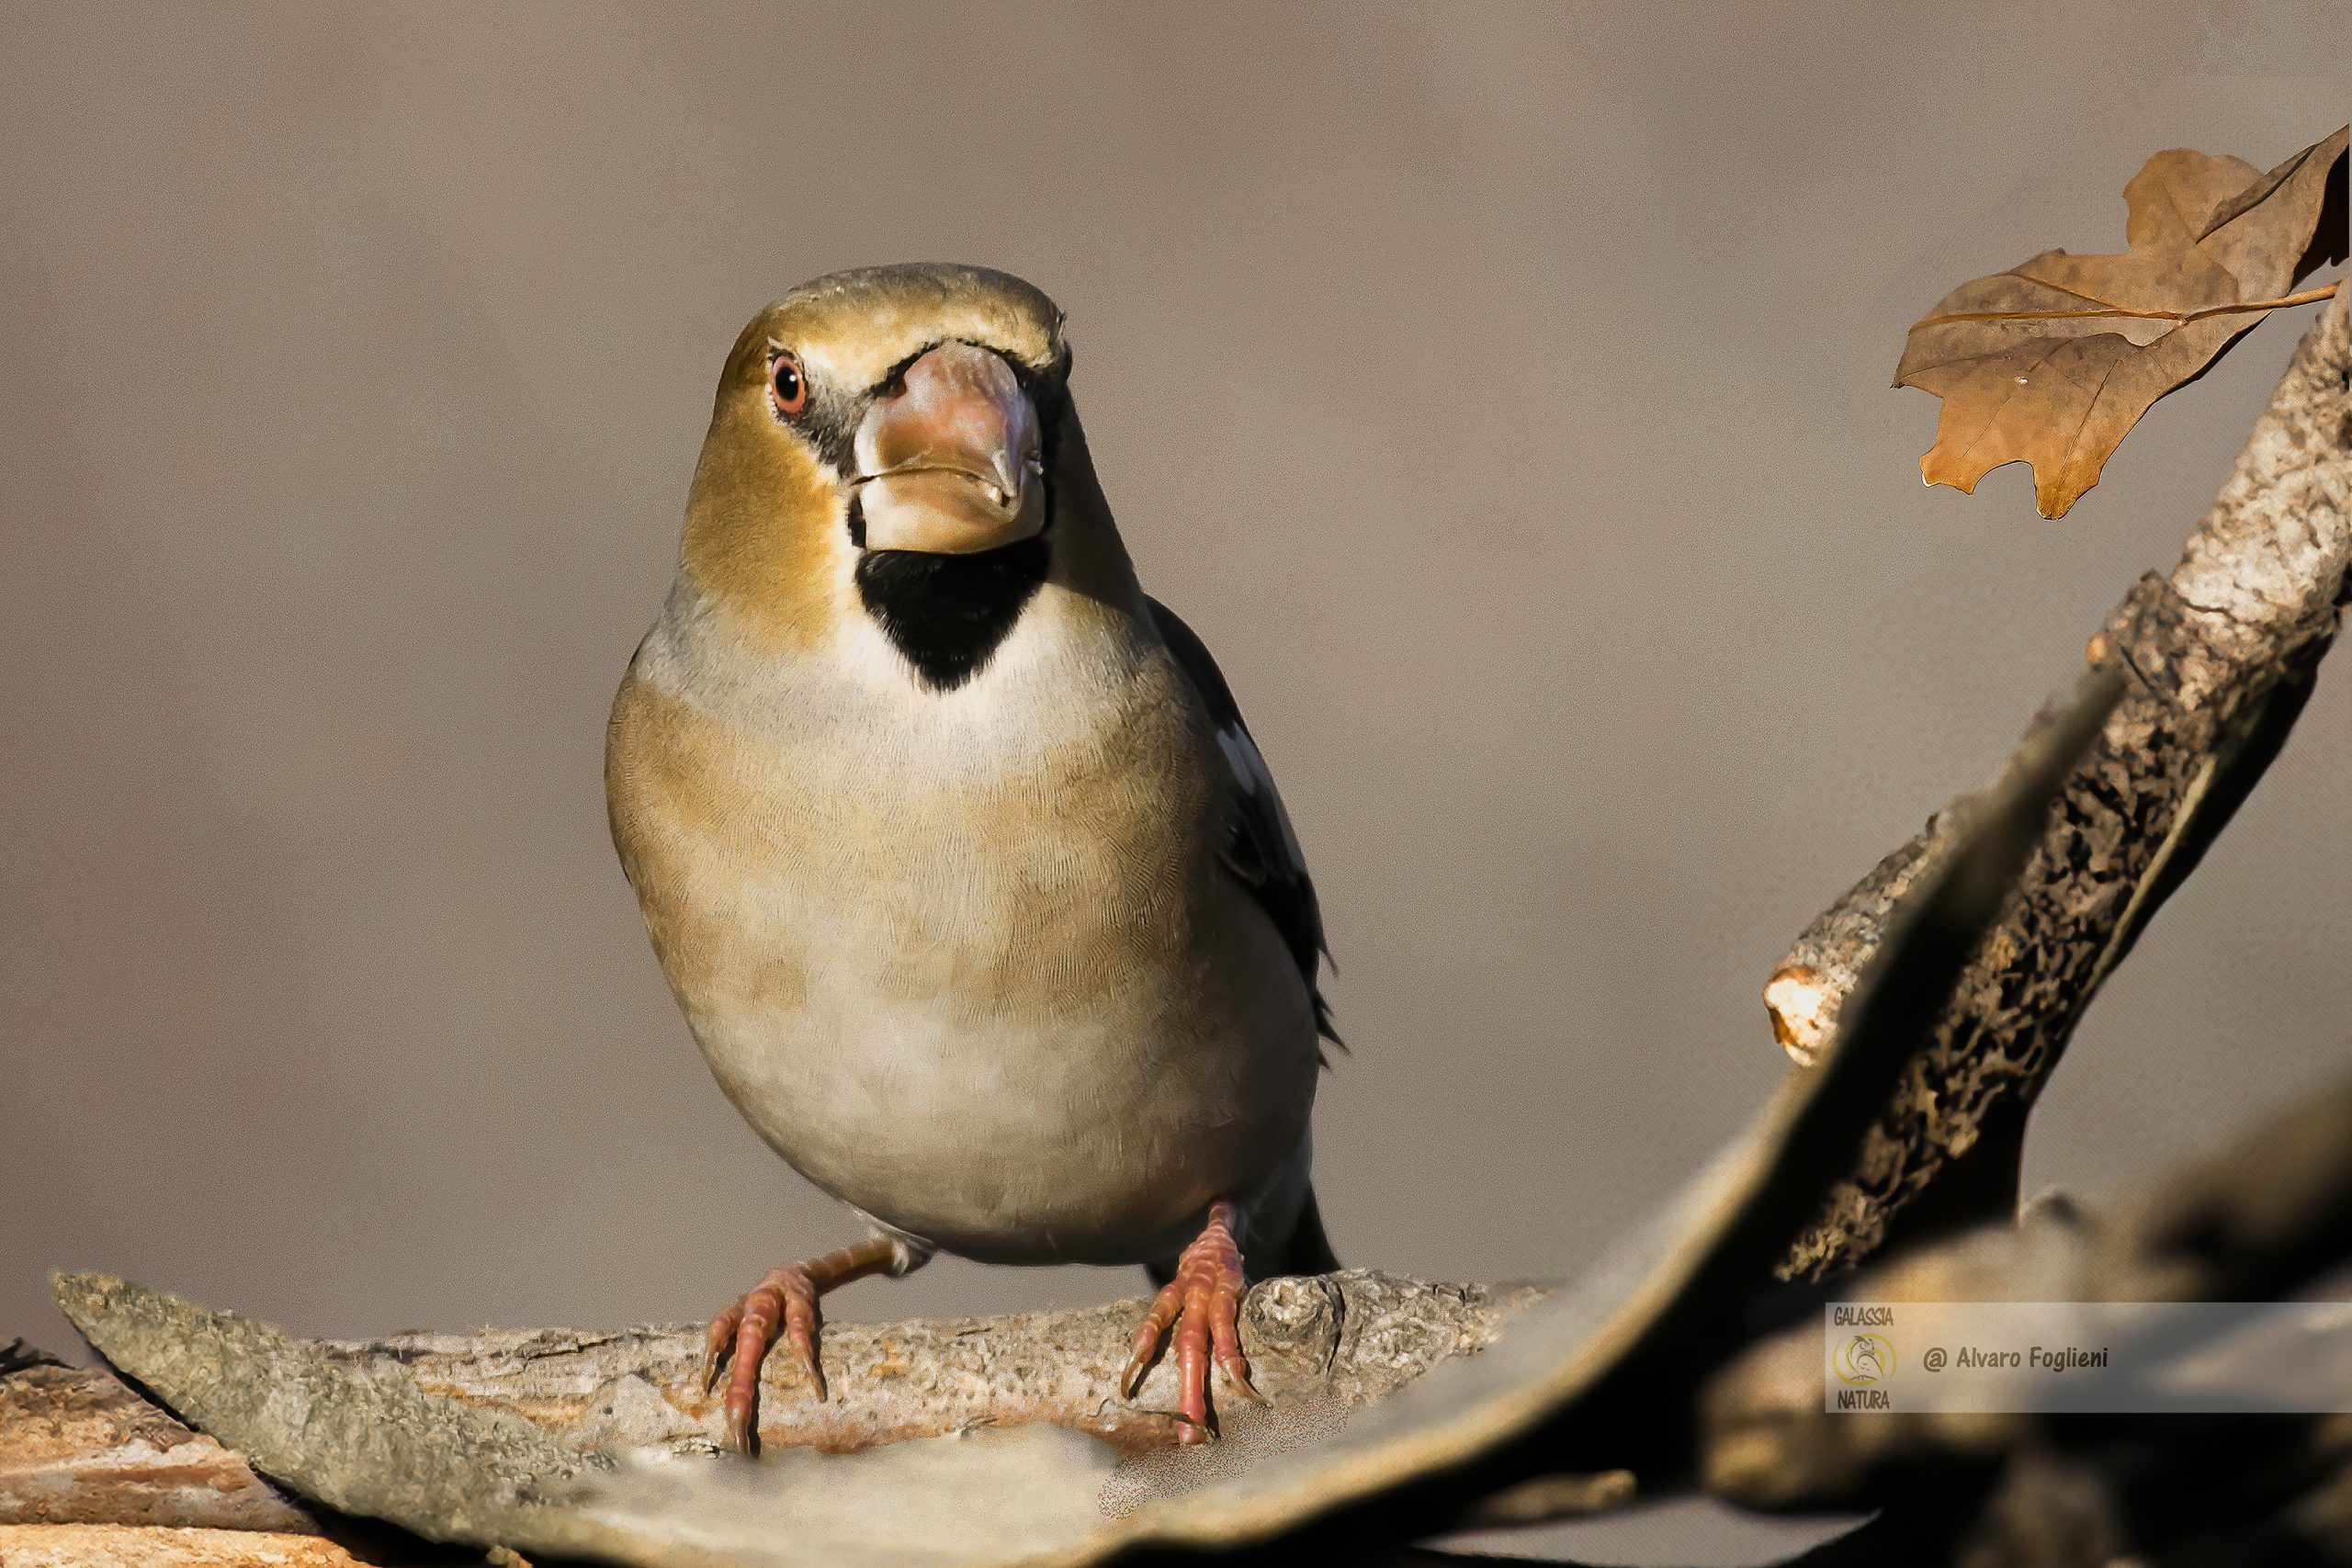 Sii paziente e osservante: gli uccelli sono creature imprevedibili, quindi preparati a trascorrere del tempo osservando il loro comportamento.